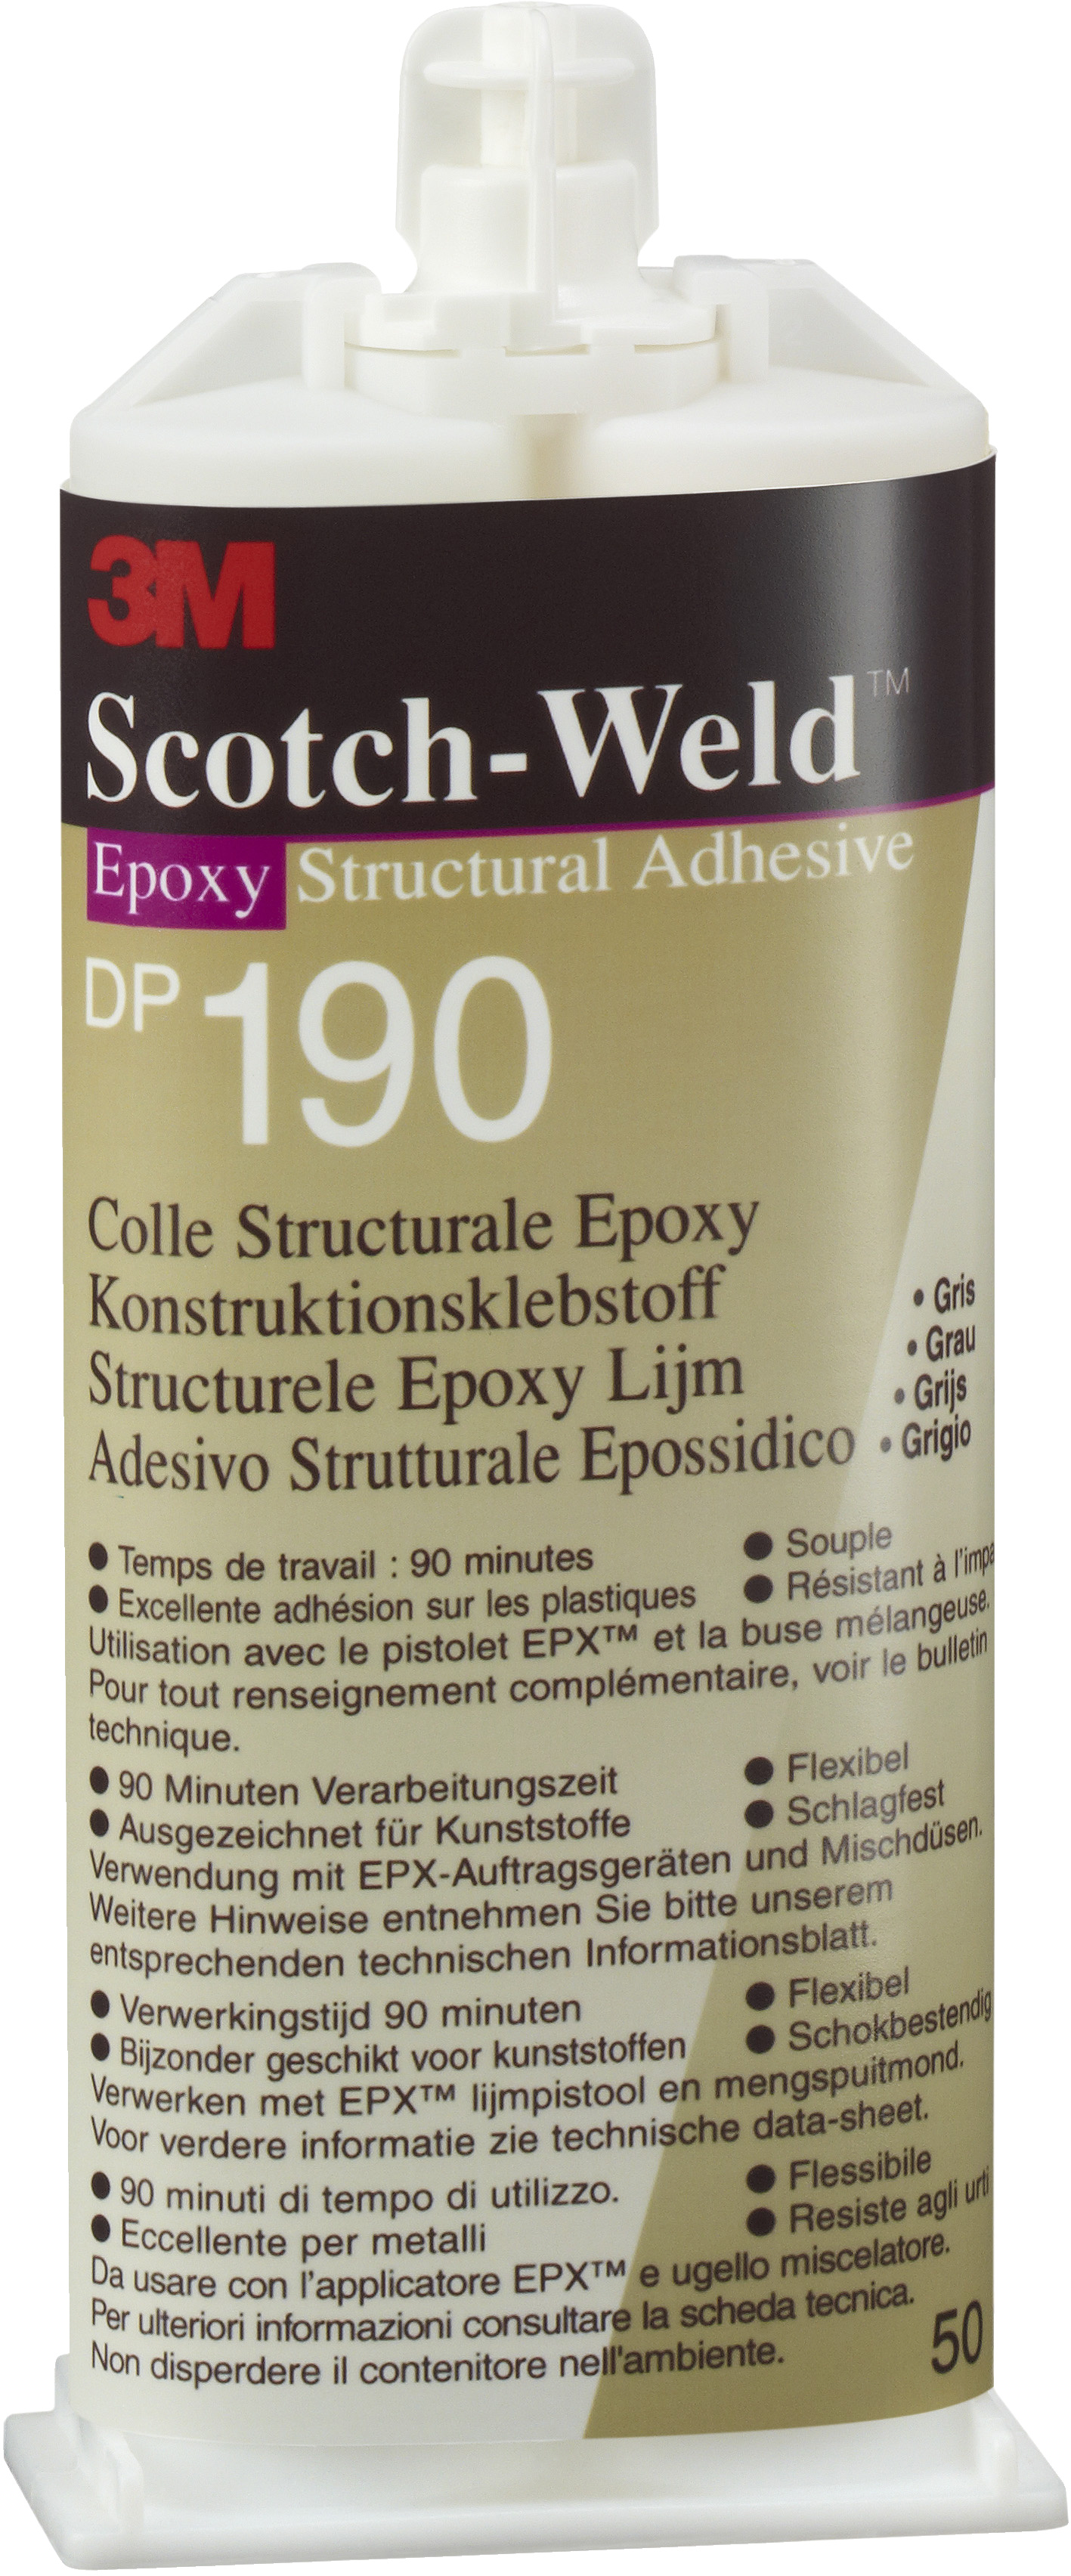 3M Scotch-Weld DP 190, 50 ml